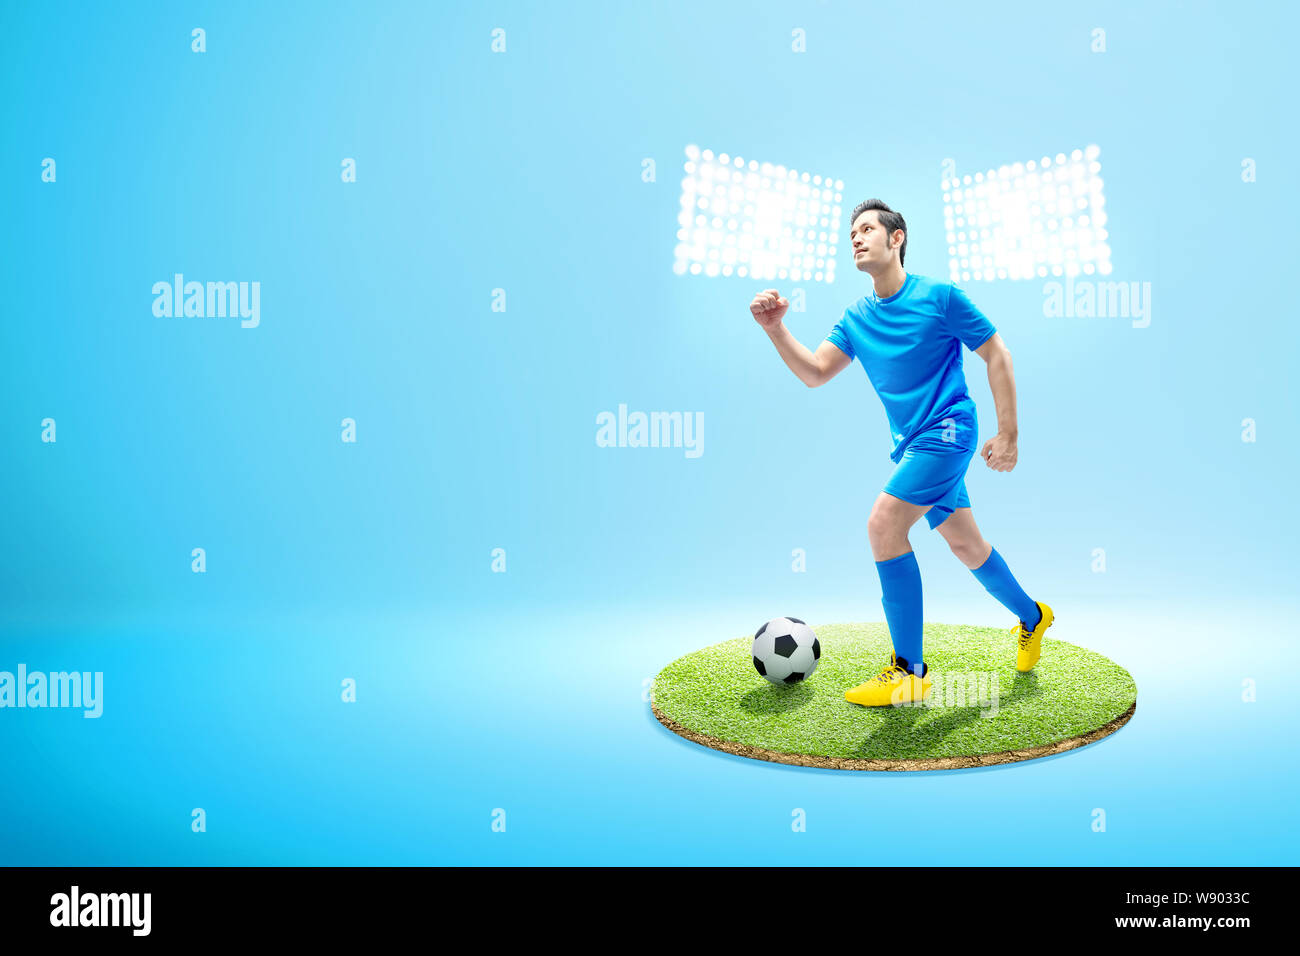 Asian giocatore di football uomo correre con la palla sul campo di calcio con faretti Foto Stock